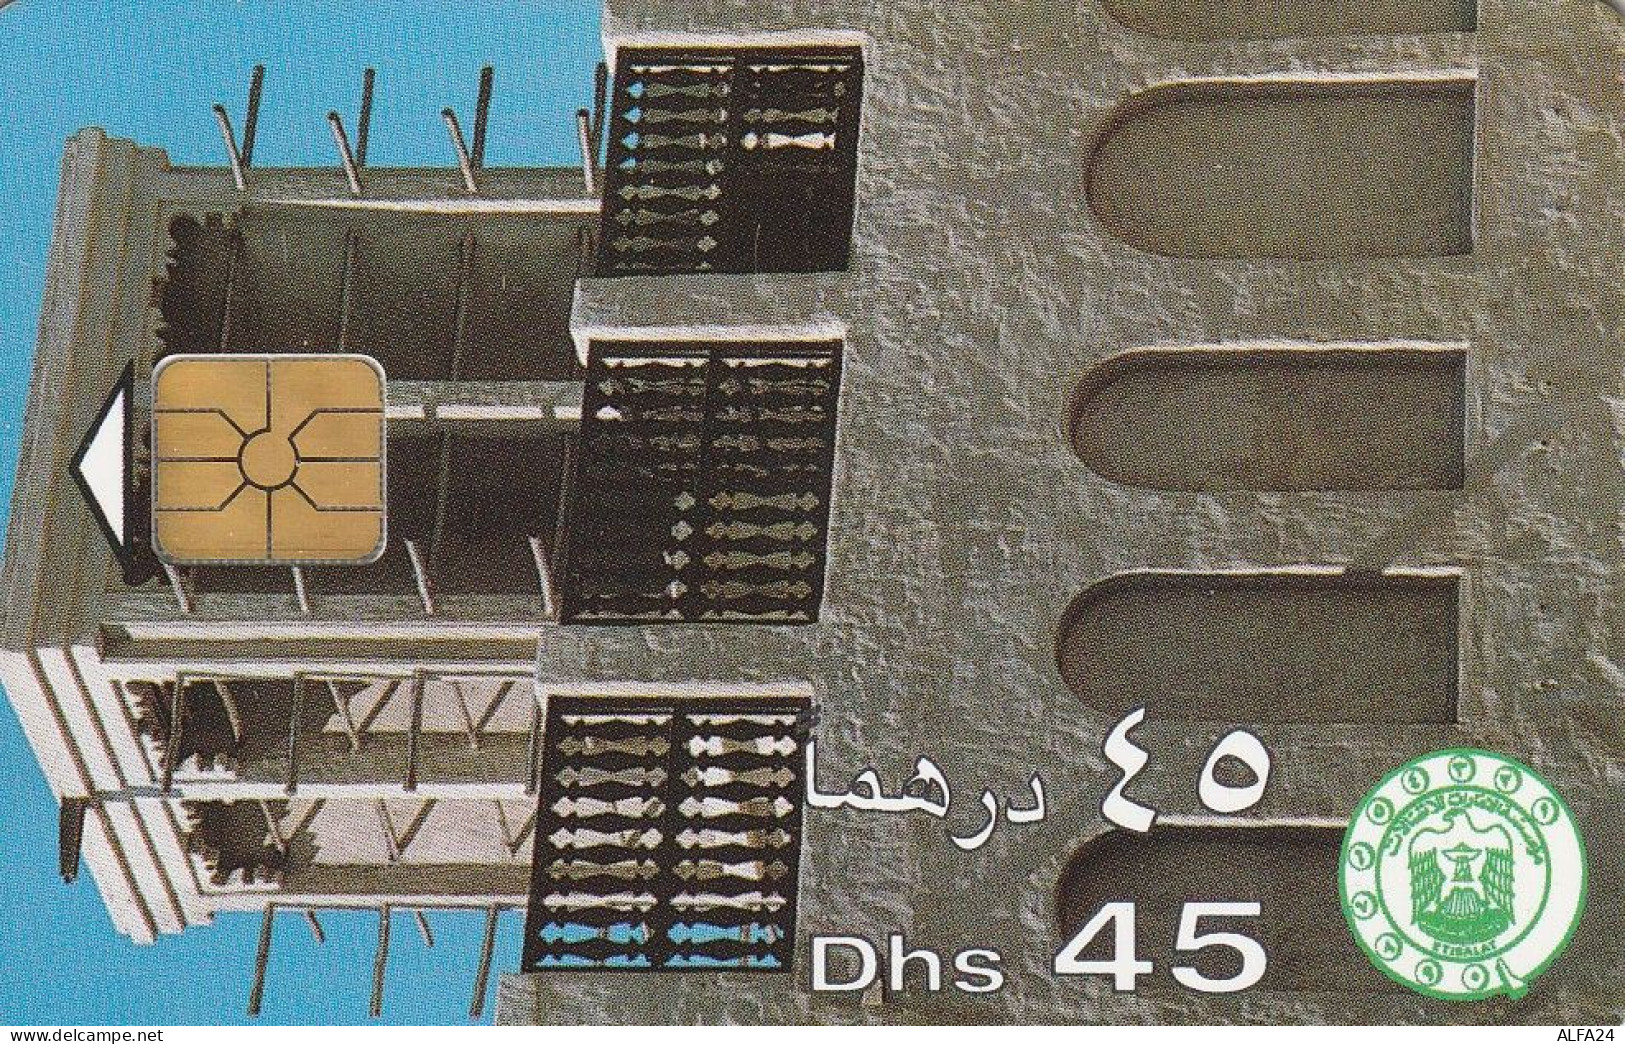 PHONE CARD EMIRATI ARABI  (CZ2413 - Ver. Arab. Emirate